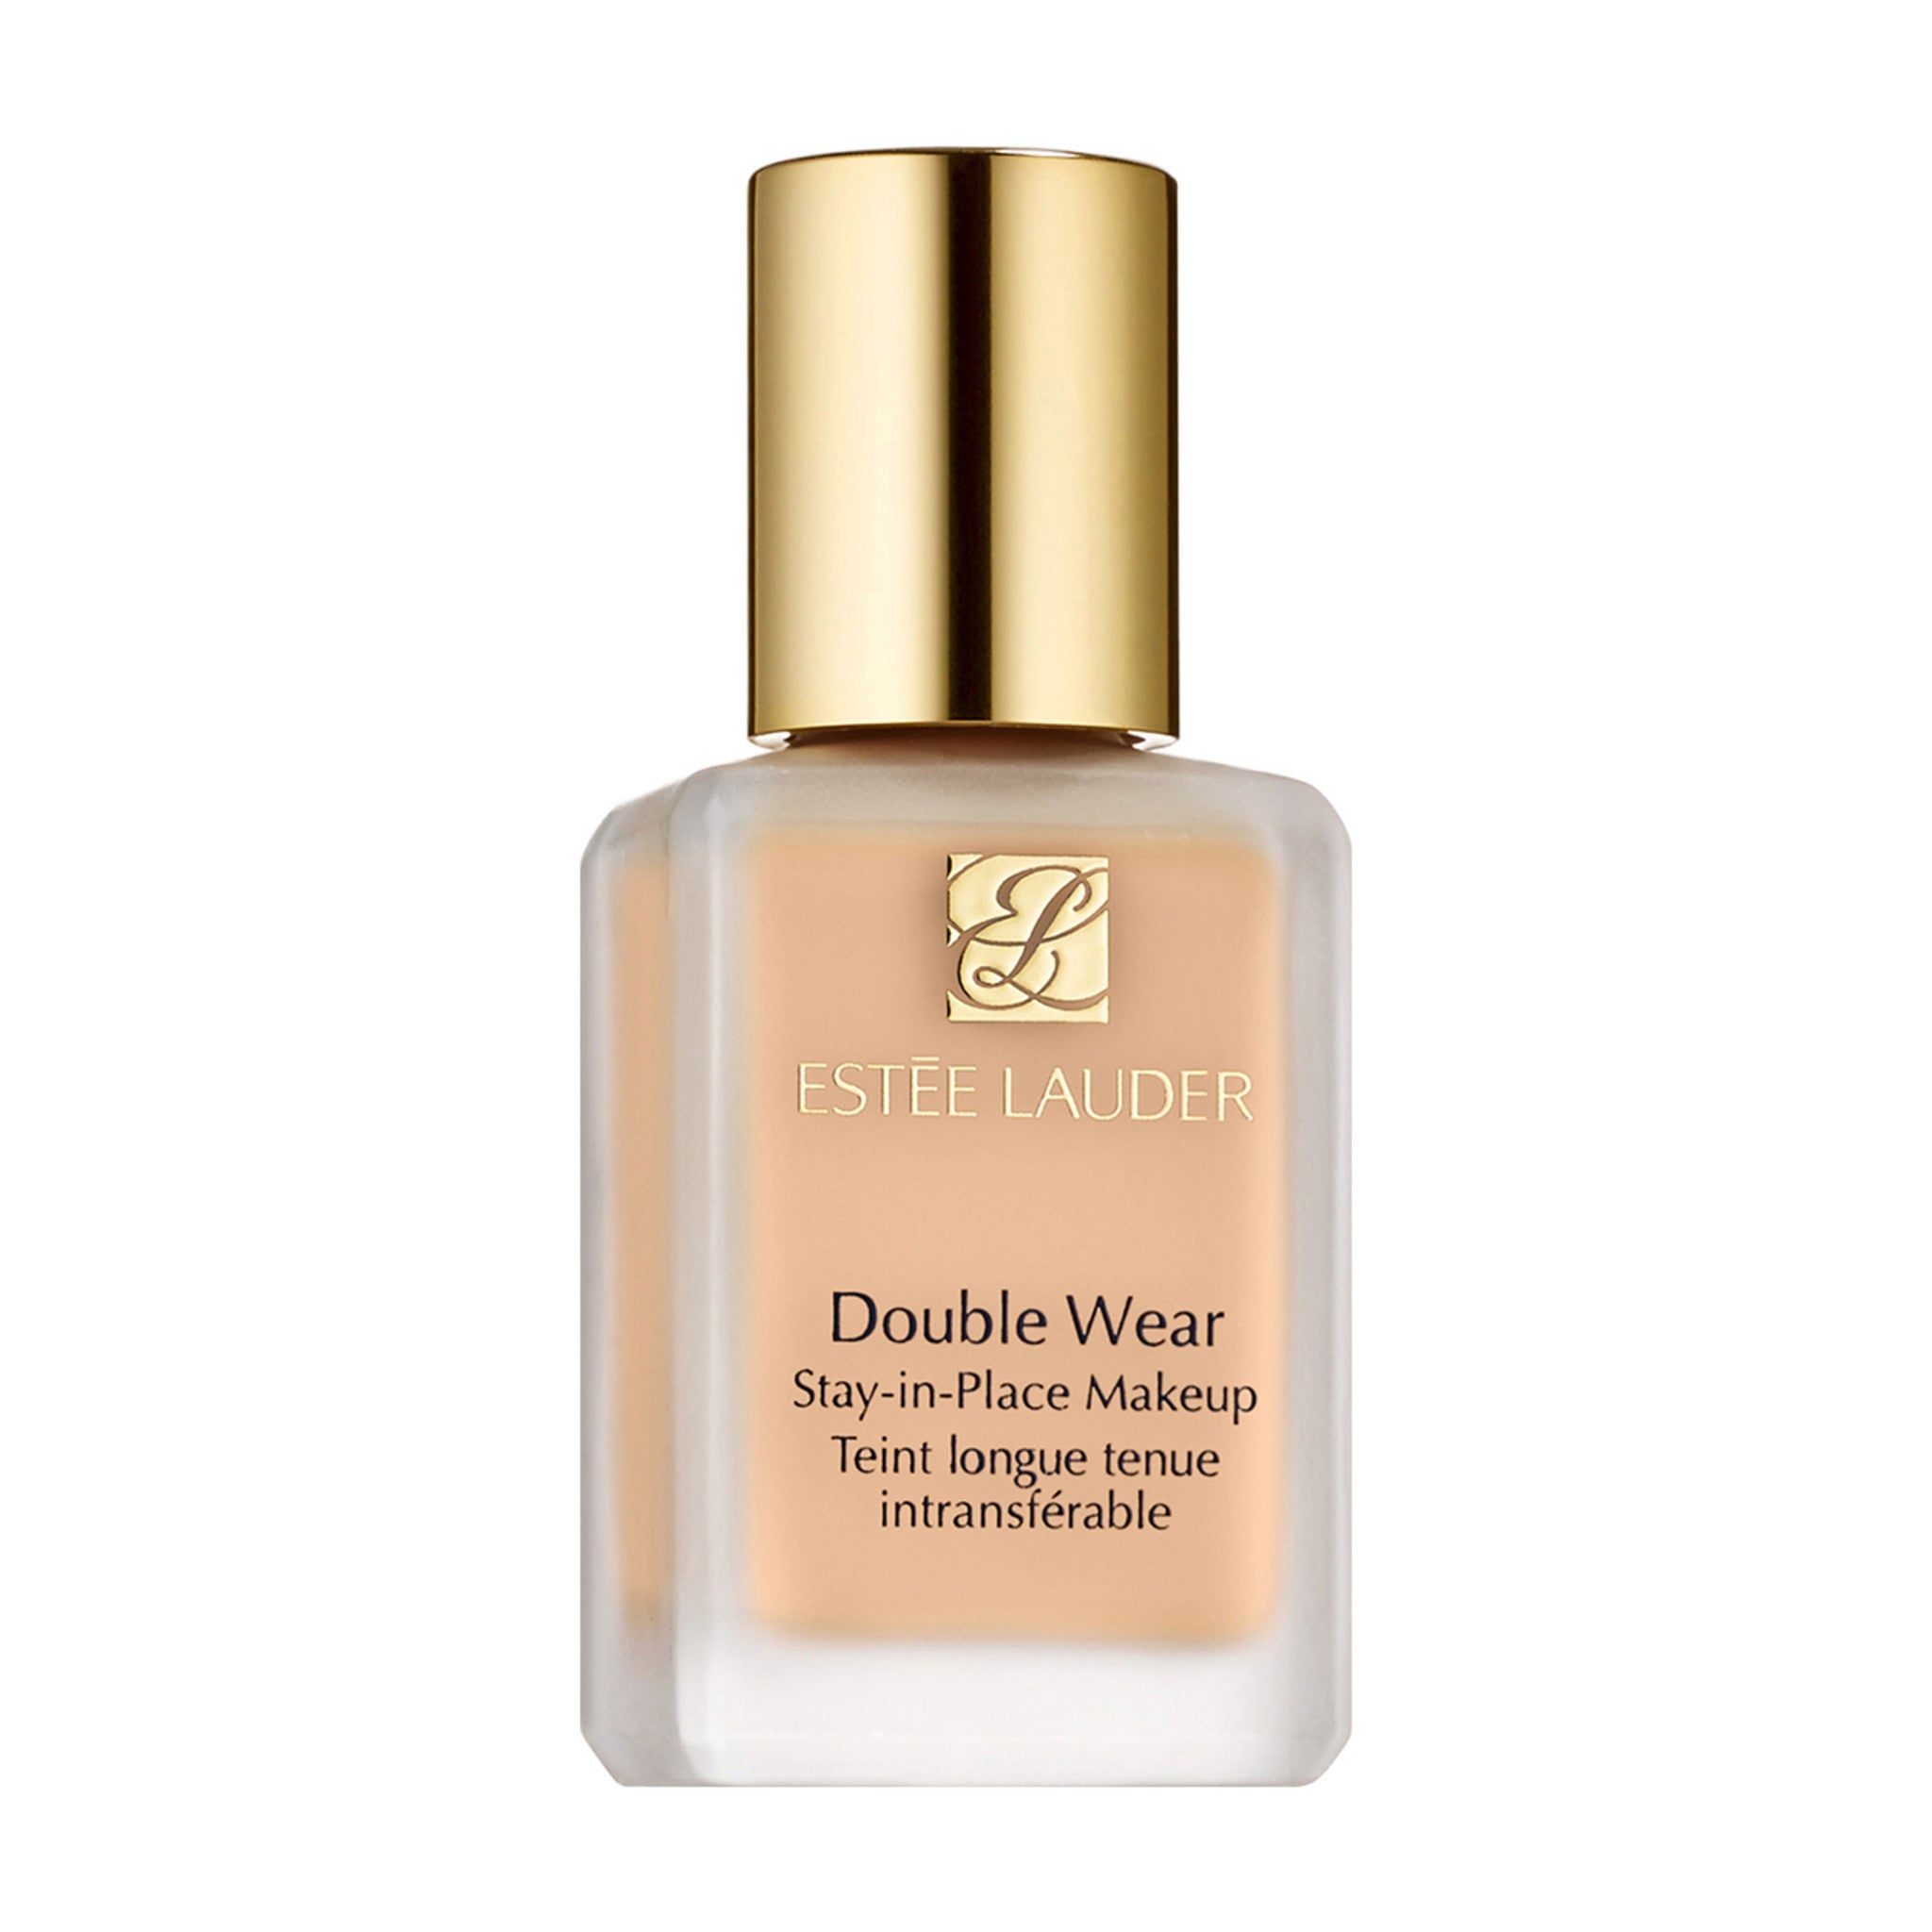 Estee Lauder Double Wear Stay-In-Place Makeup, 05 Shell Beige - 1 fl oz bottle